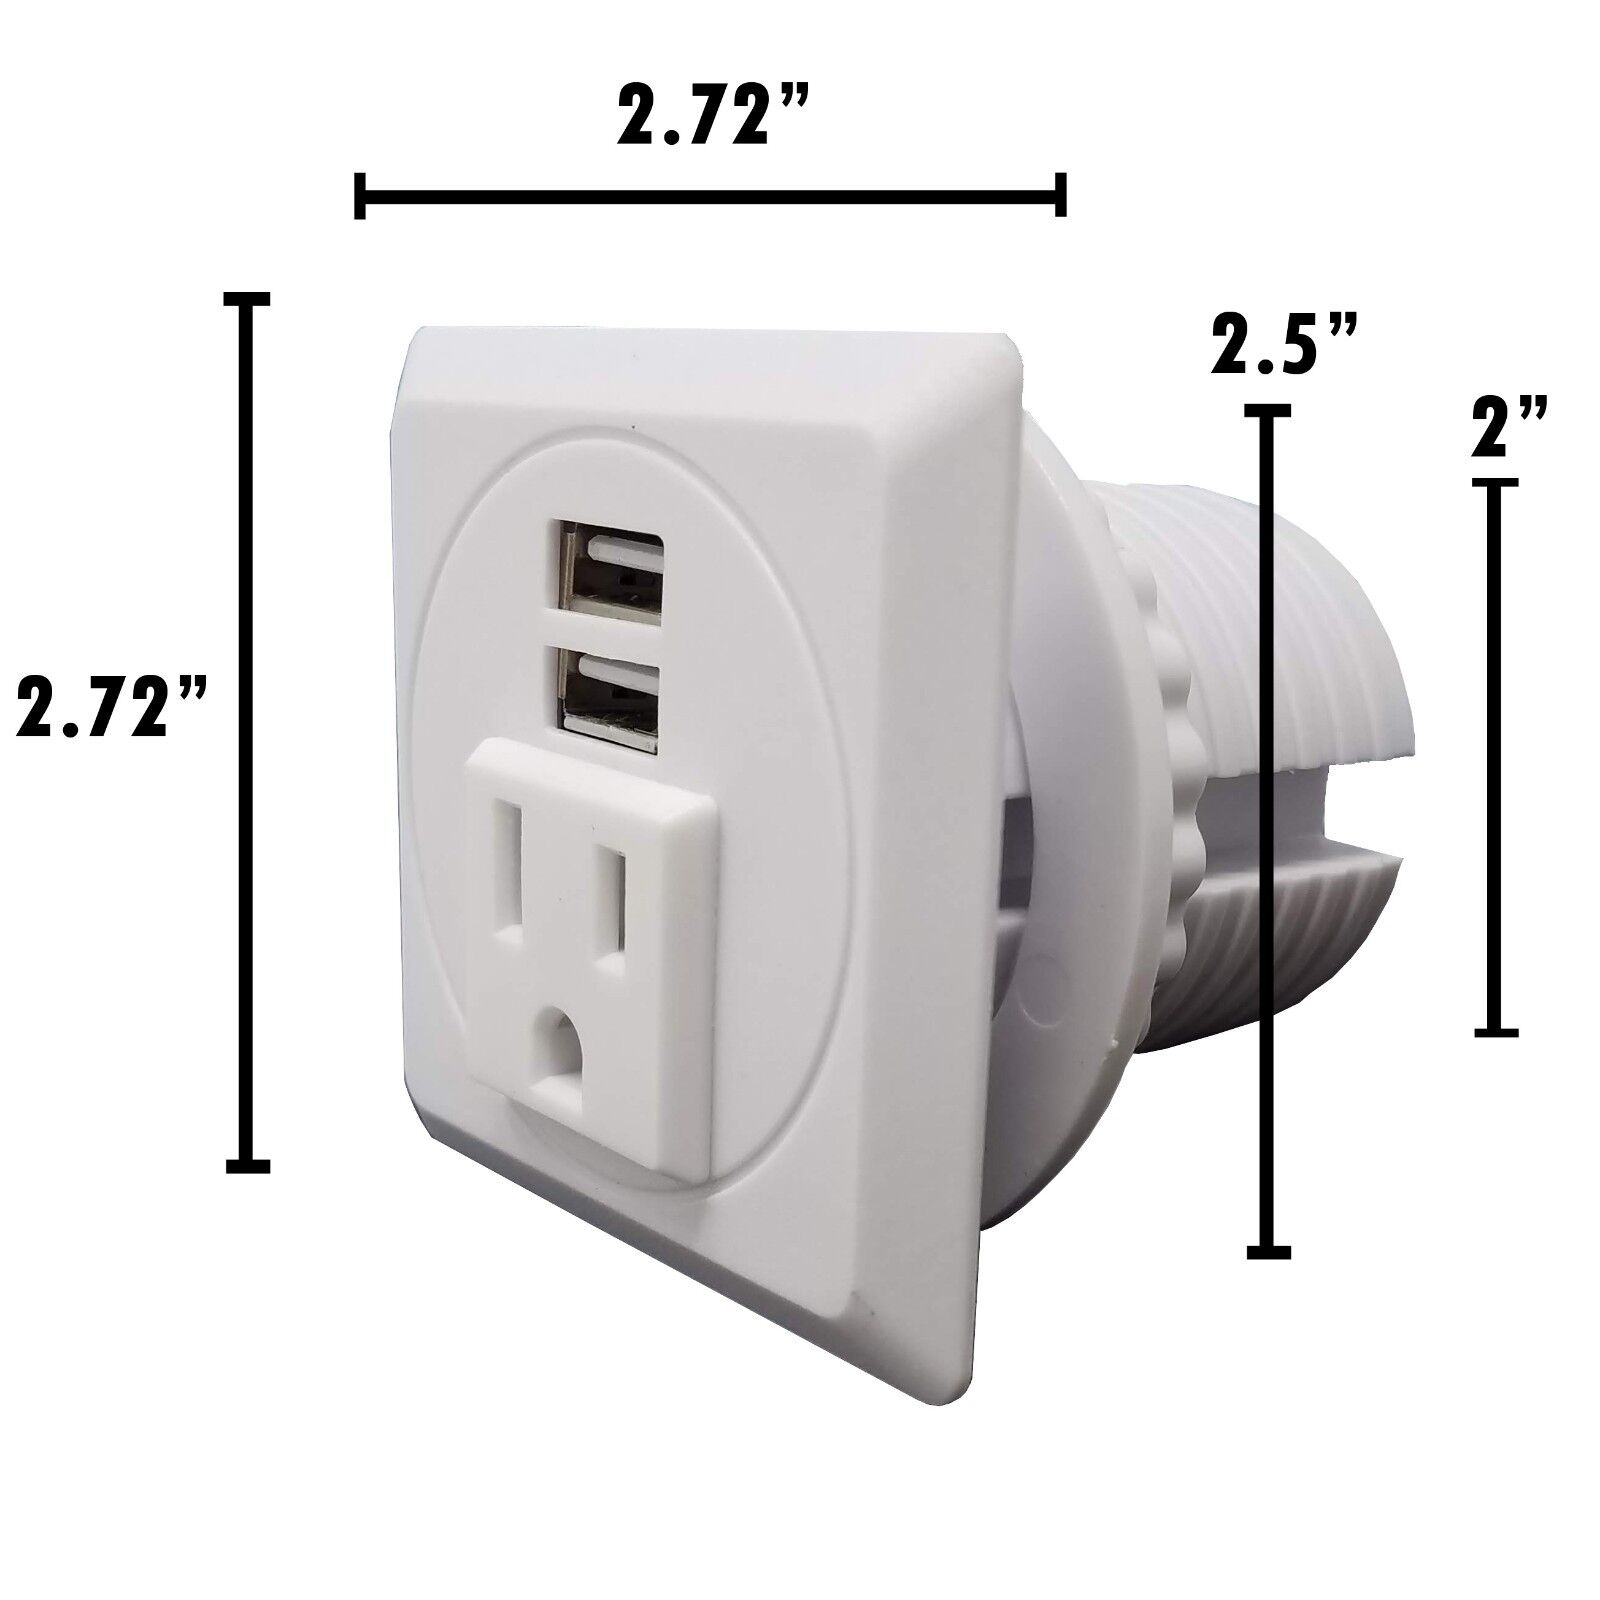 Desktop Power Grommet W/ 2 USB Charging Ports 1 AC Outlet-Fit 2